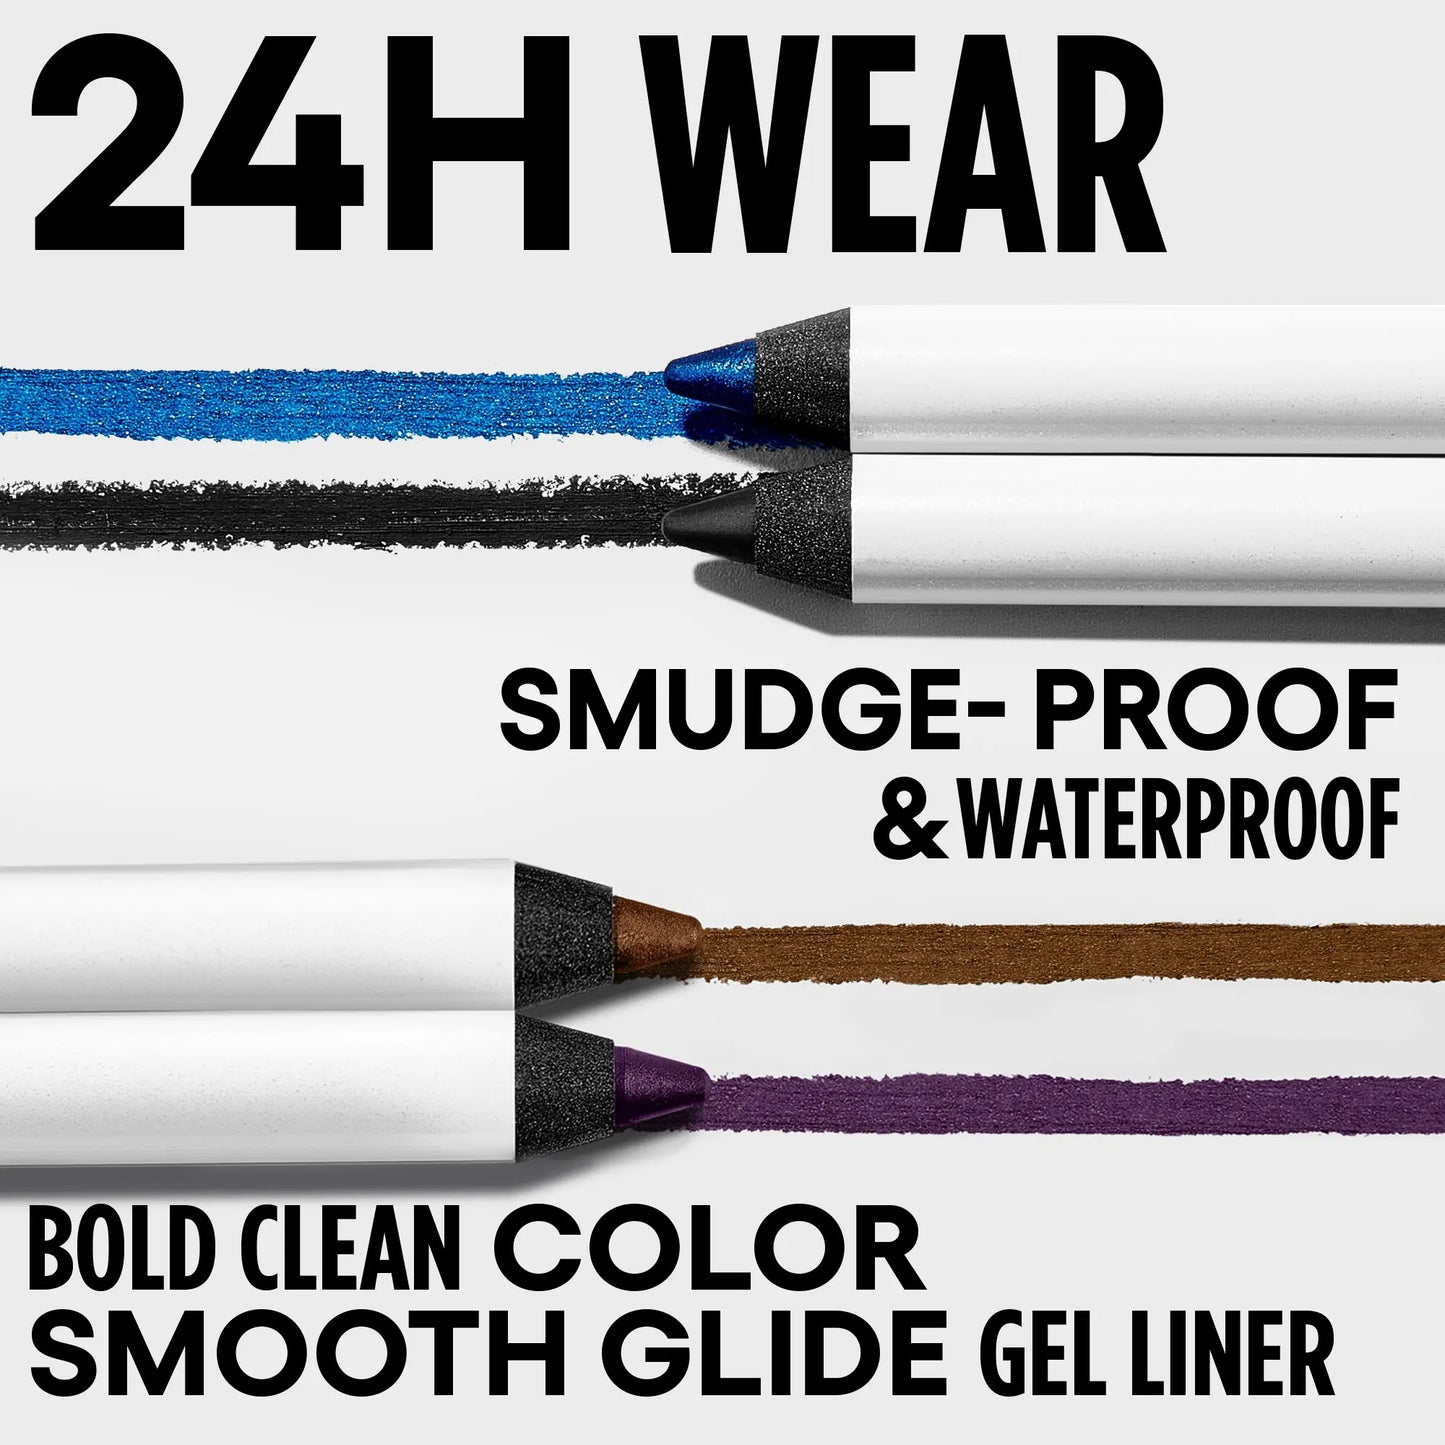 GXVE Violet Timing - 24hr Waterproof Gel Eyeliner Pencil